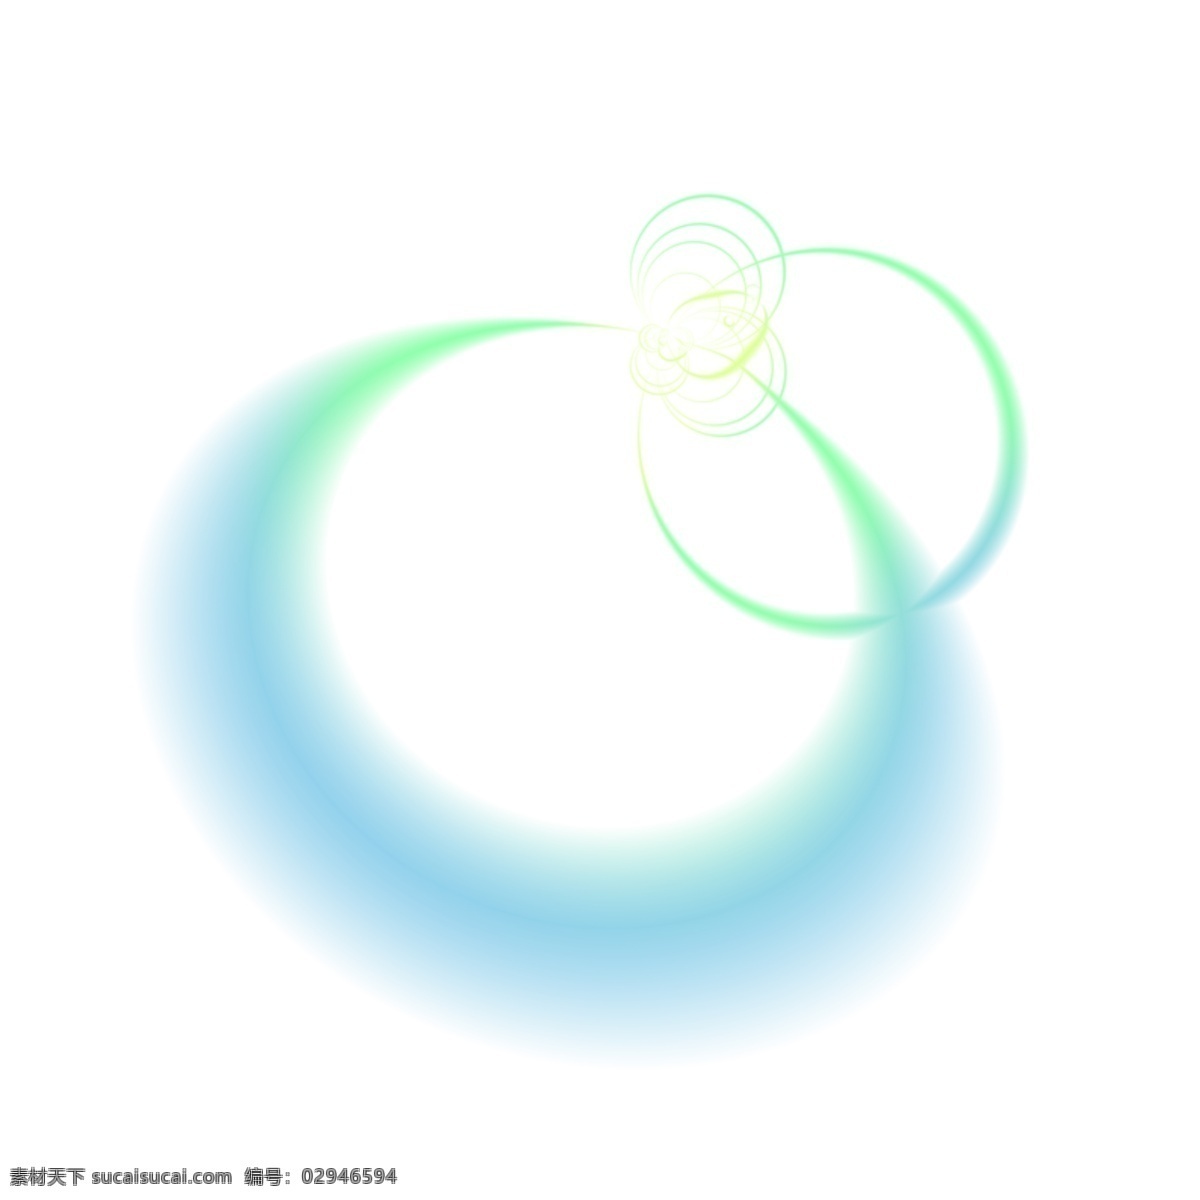 青色 发光 光圈 透明 底 圆环发光 光效 光环 免抠图 装饰图 光束 光点 插画 抠图 绿色